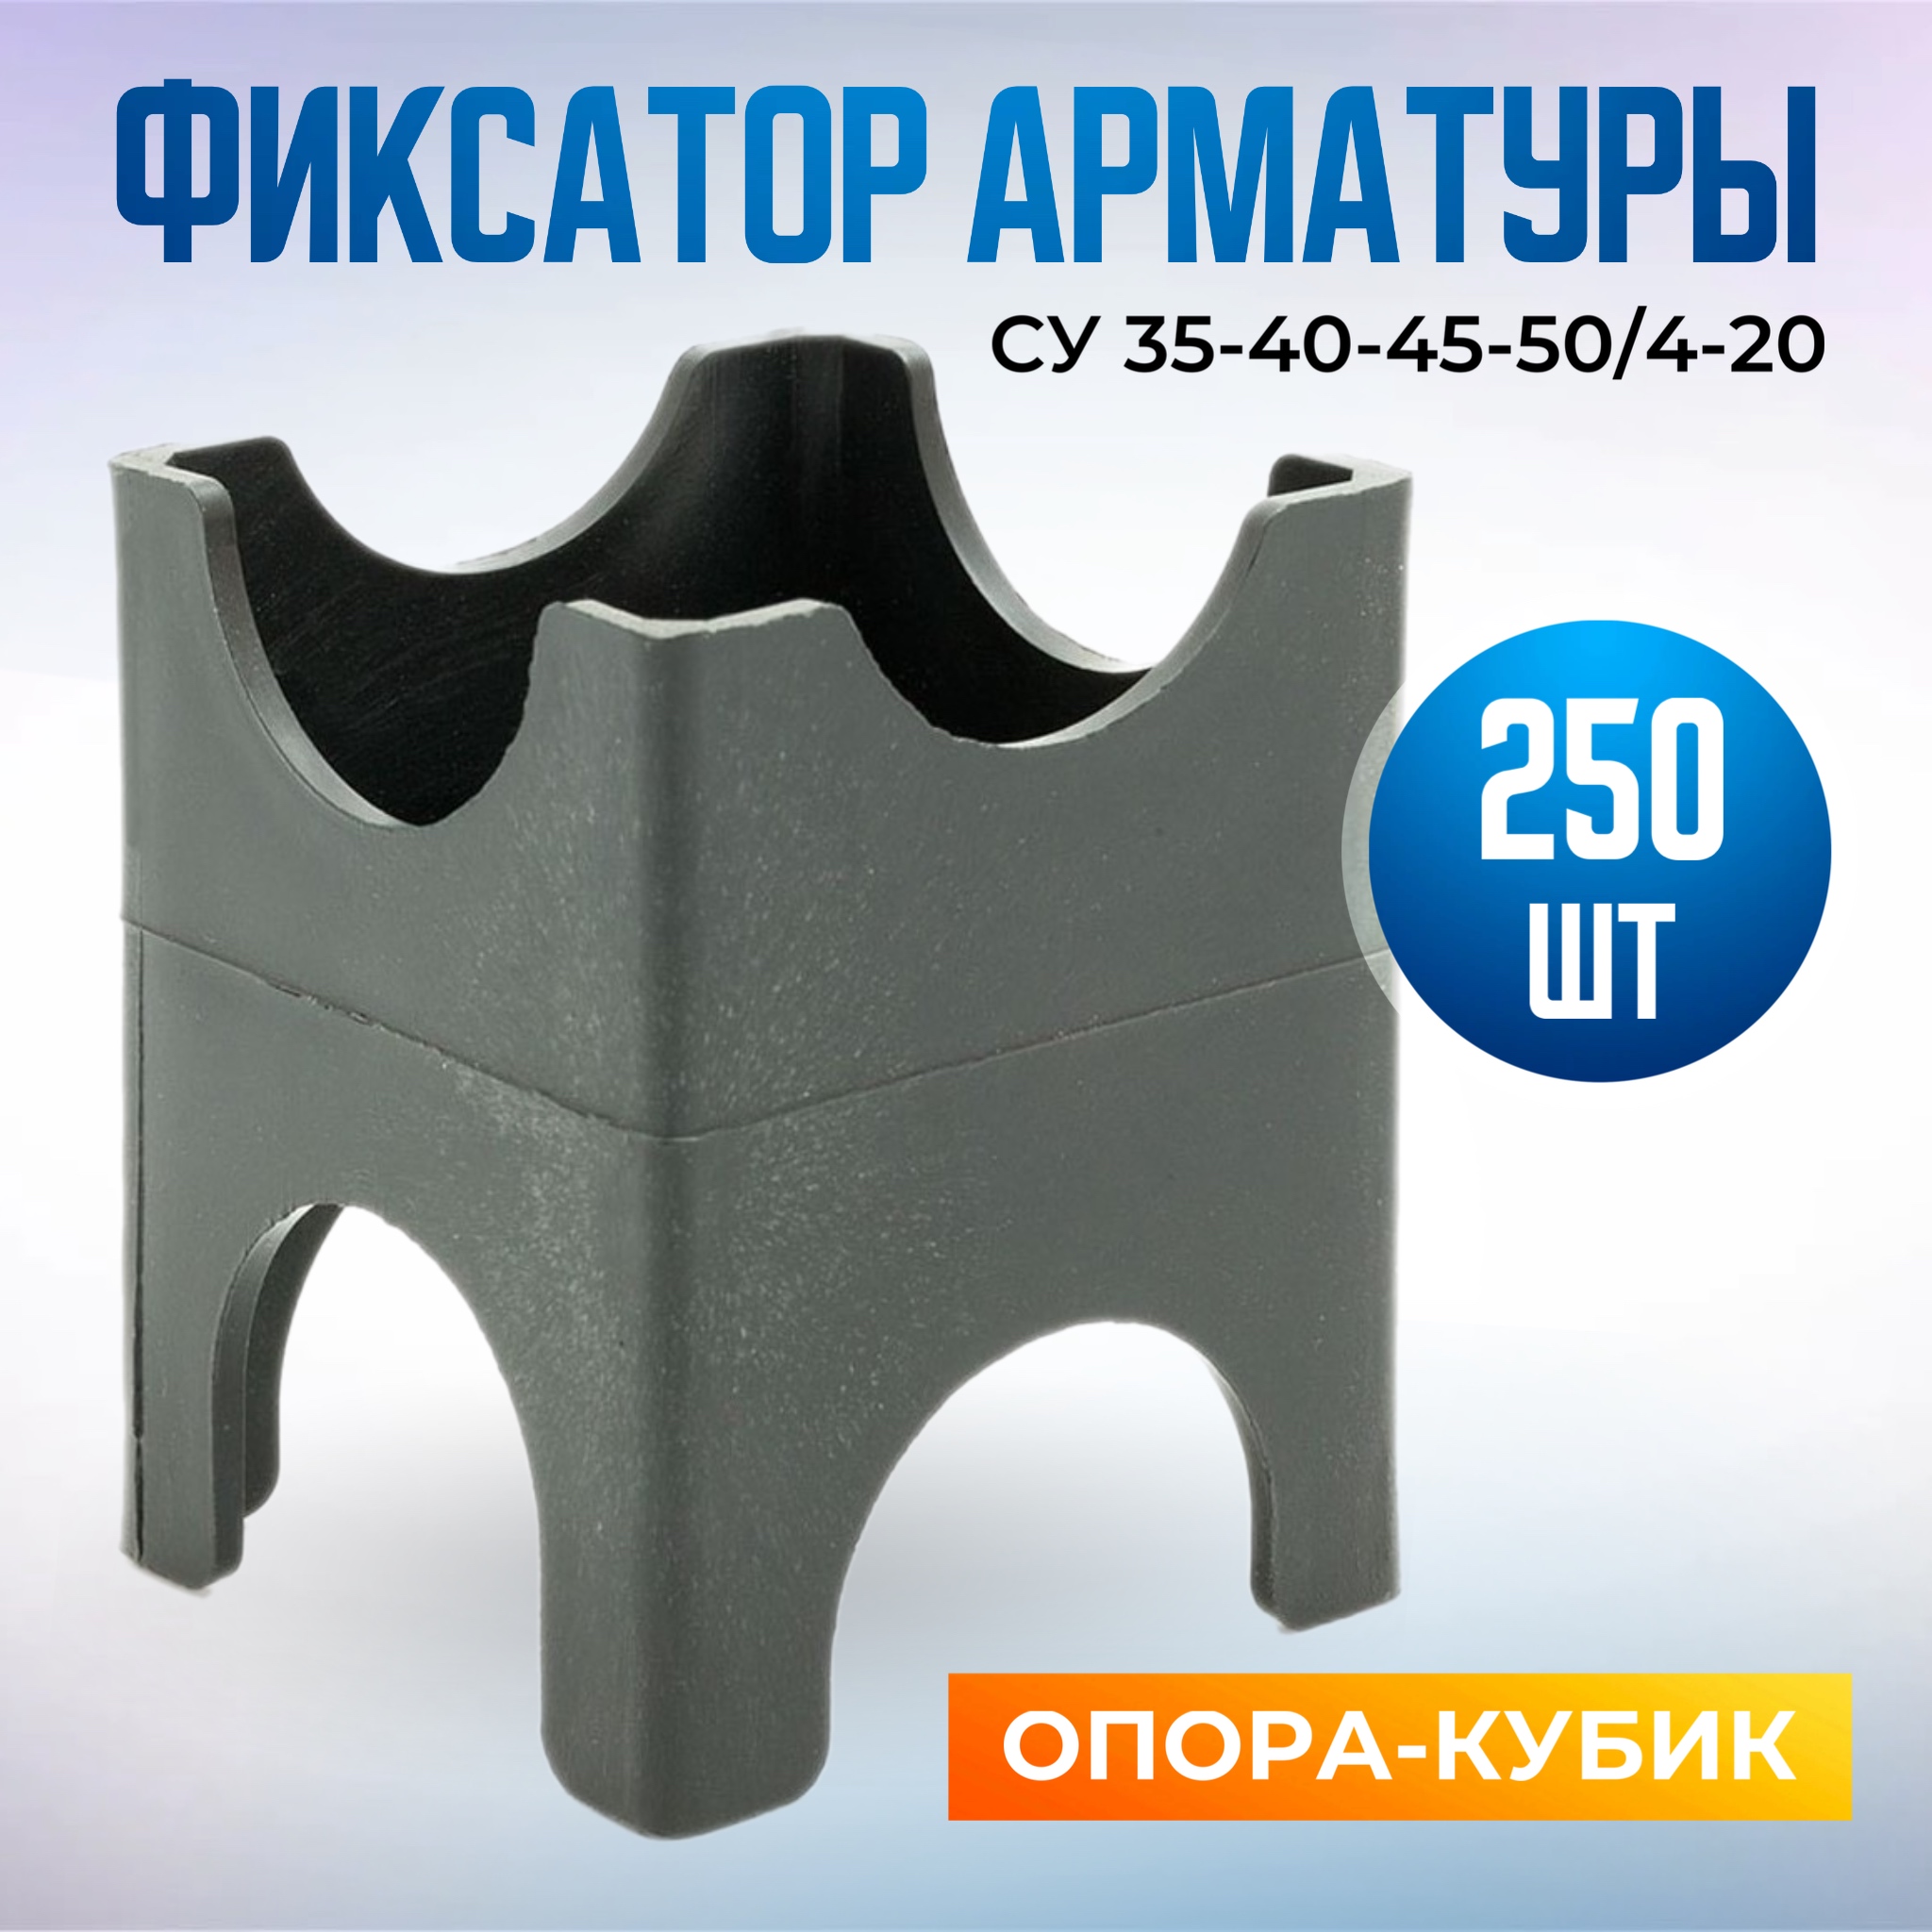 Фиксатор арматуры опора-кубик СУ 35-40-45-50/4-20, в наборе 250 штук кубик антистресс